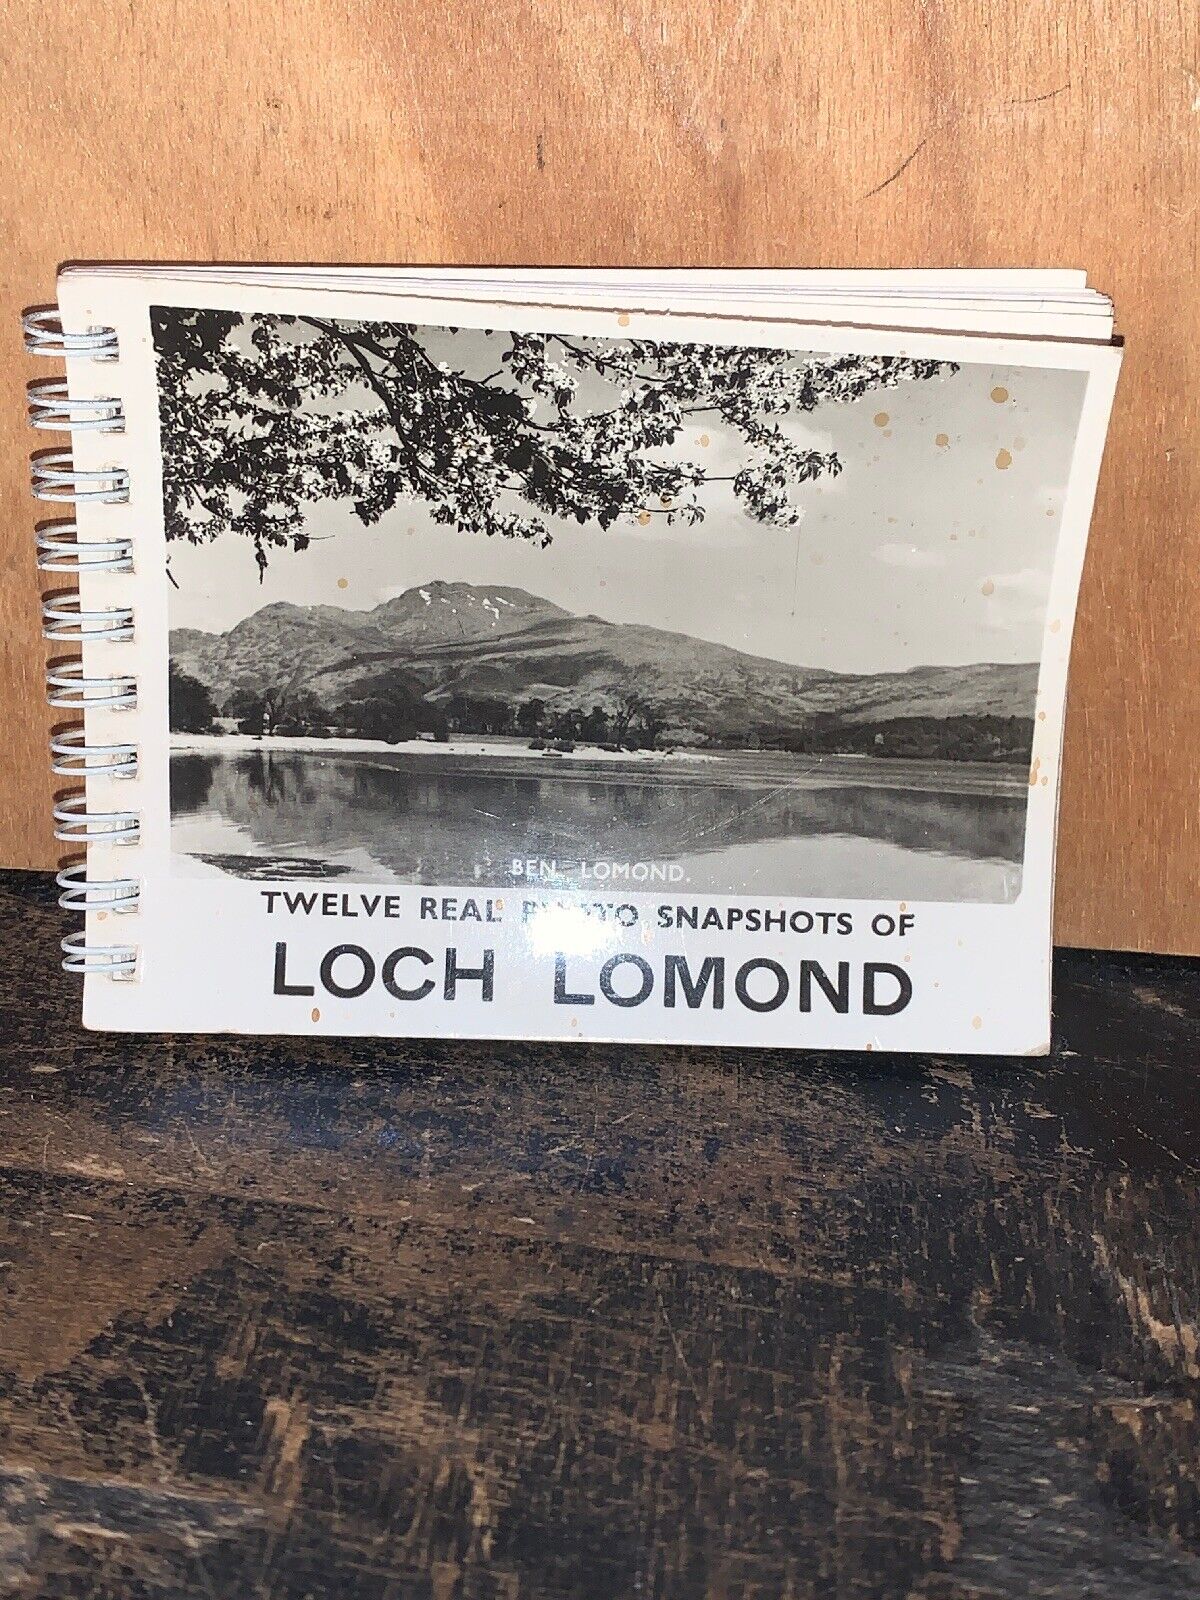 12 Real Photos Of Loch Lomond Scotland 3.5 X 3” Black And White Spiral Bound.